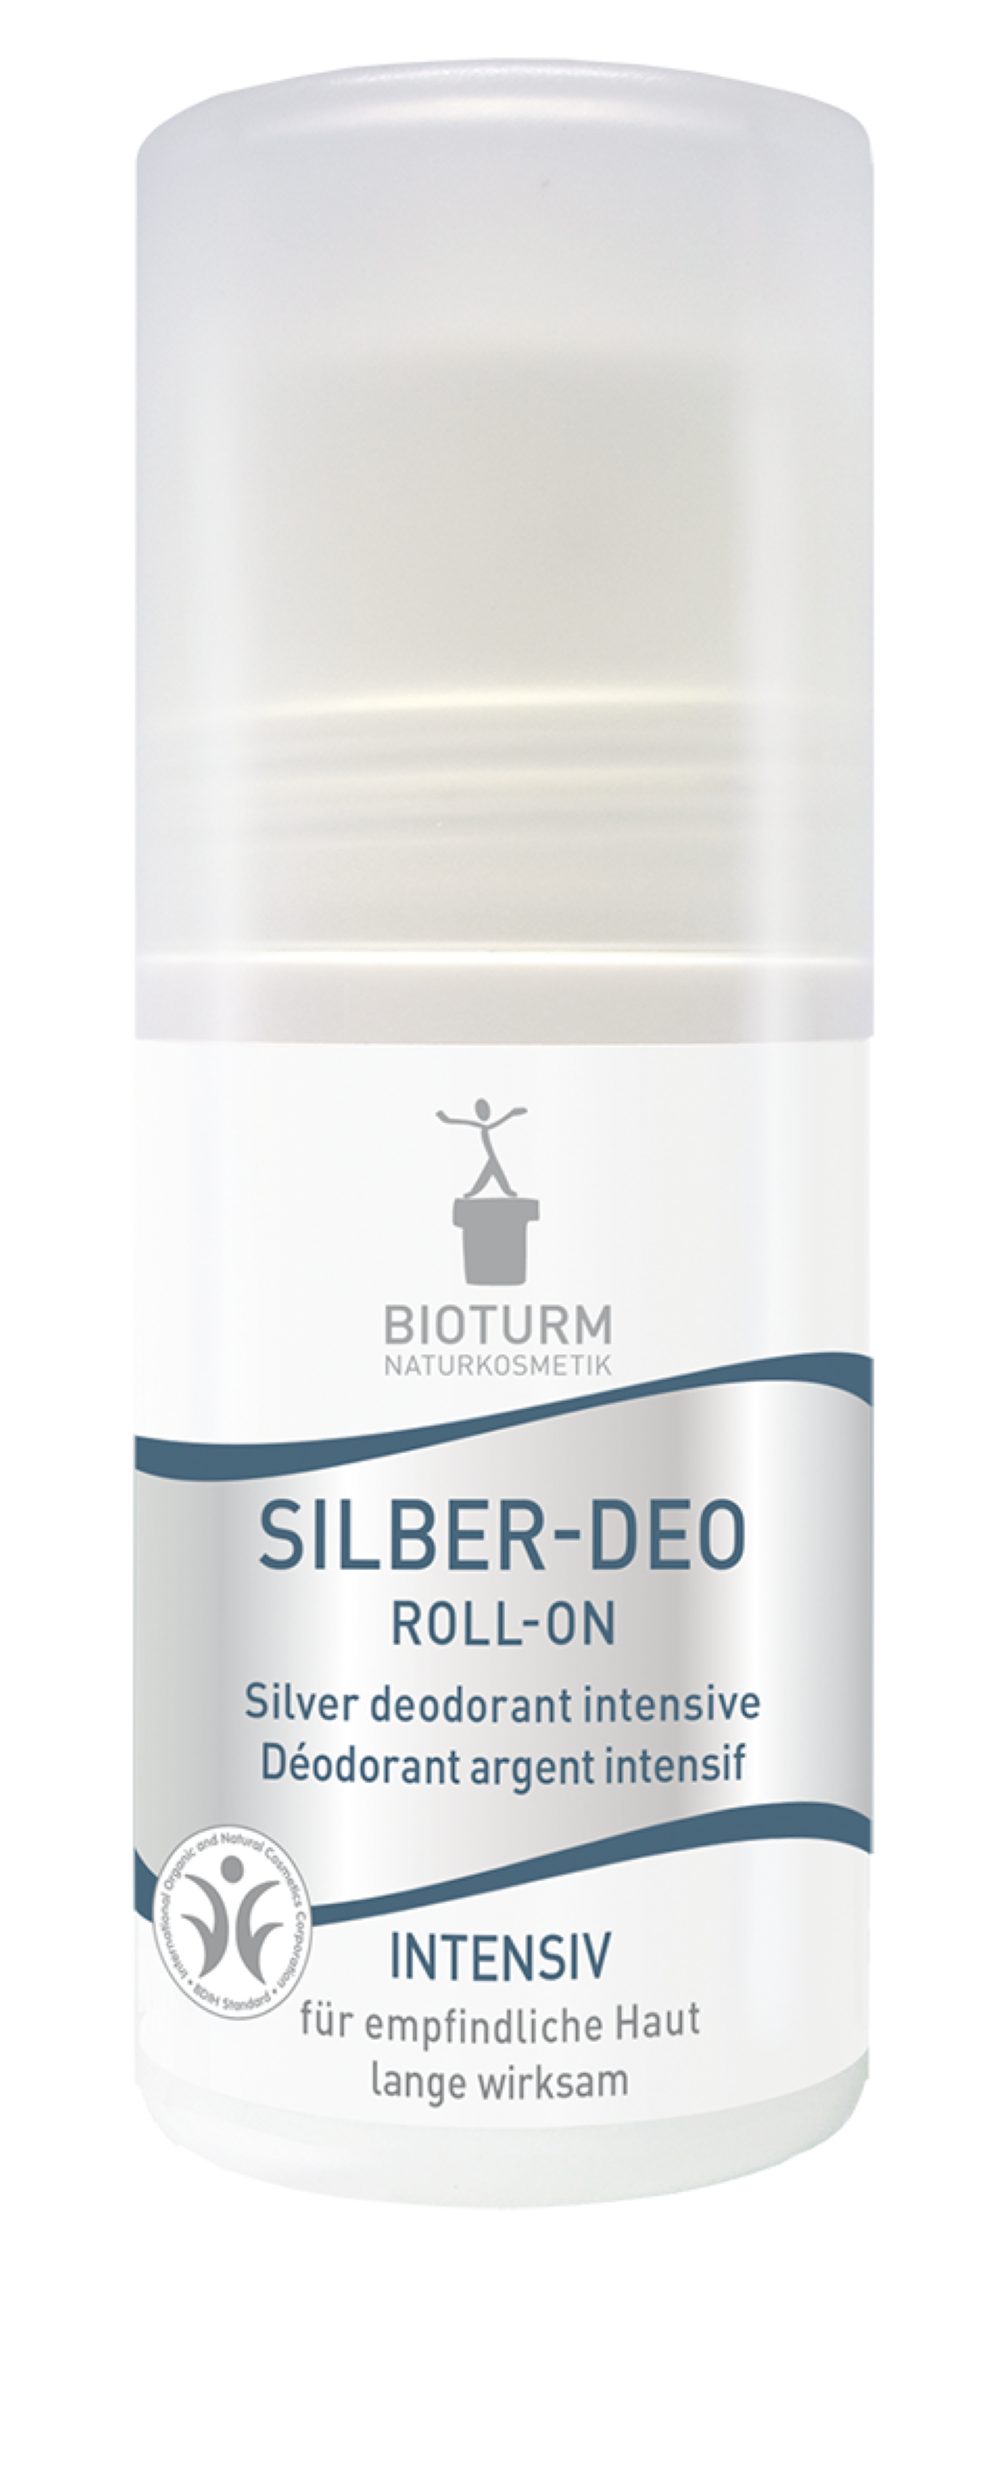 Bioturm Deo-Roller Bioturm Naturkosmetik Silber Deo Roll-On Intensiv 50 ml